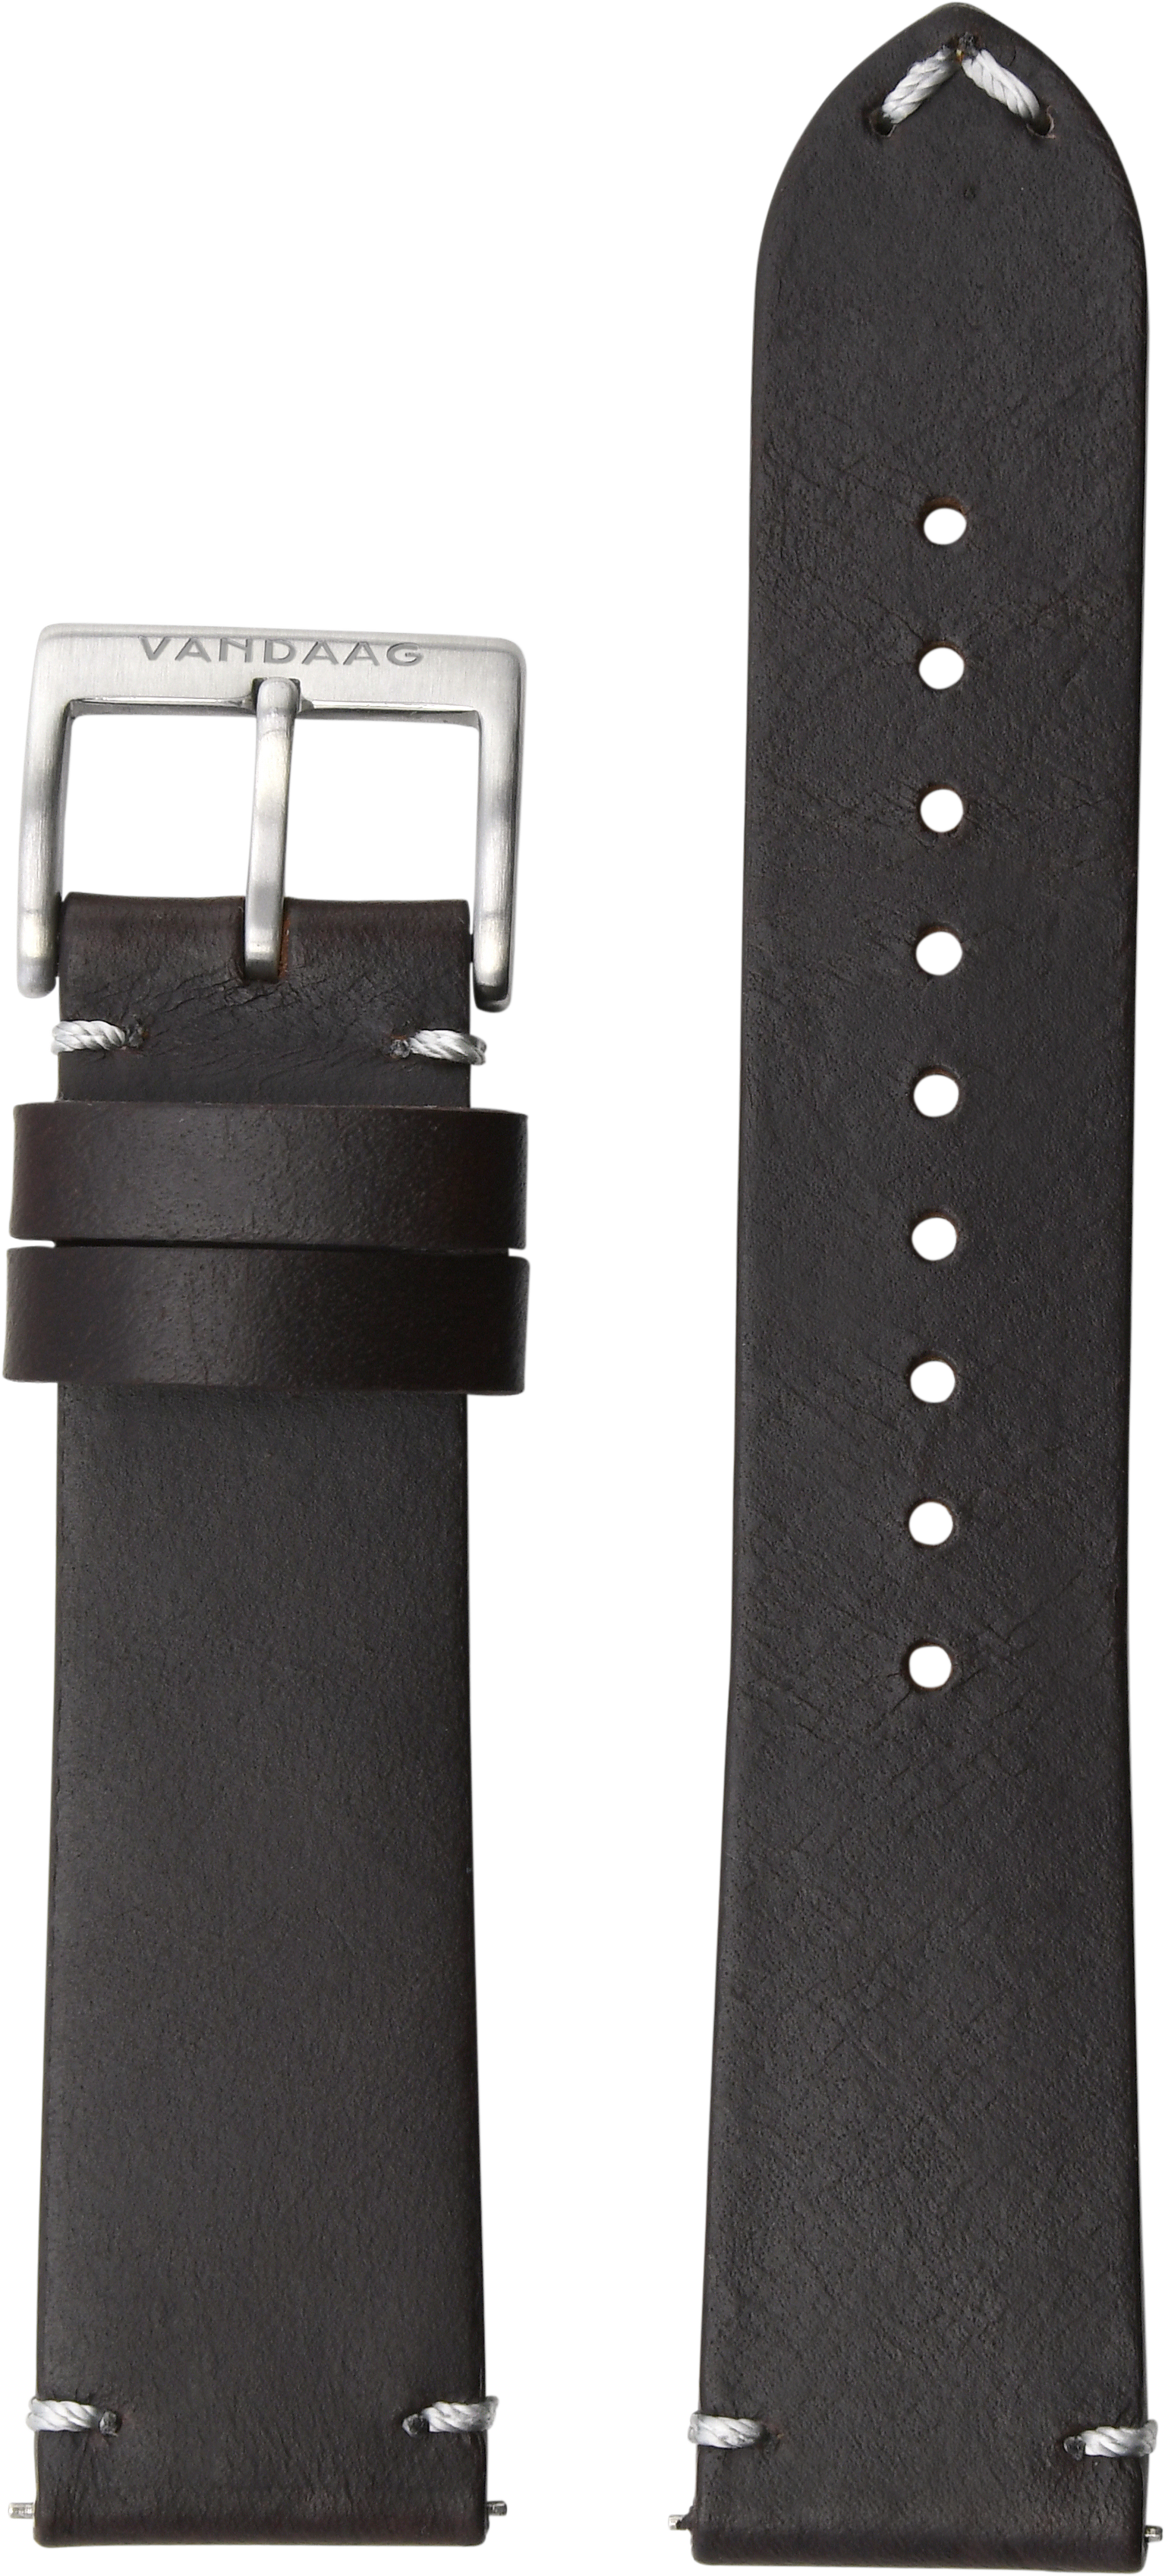 Horween-leather strap, dark brown